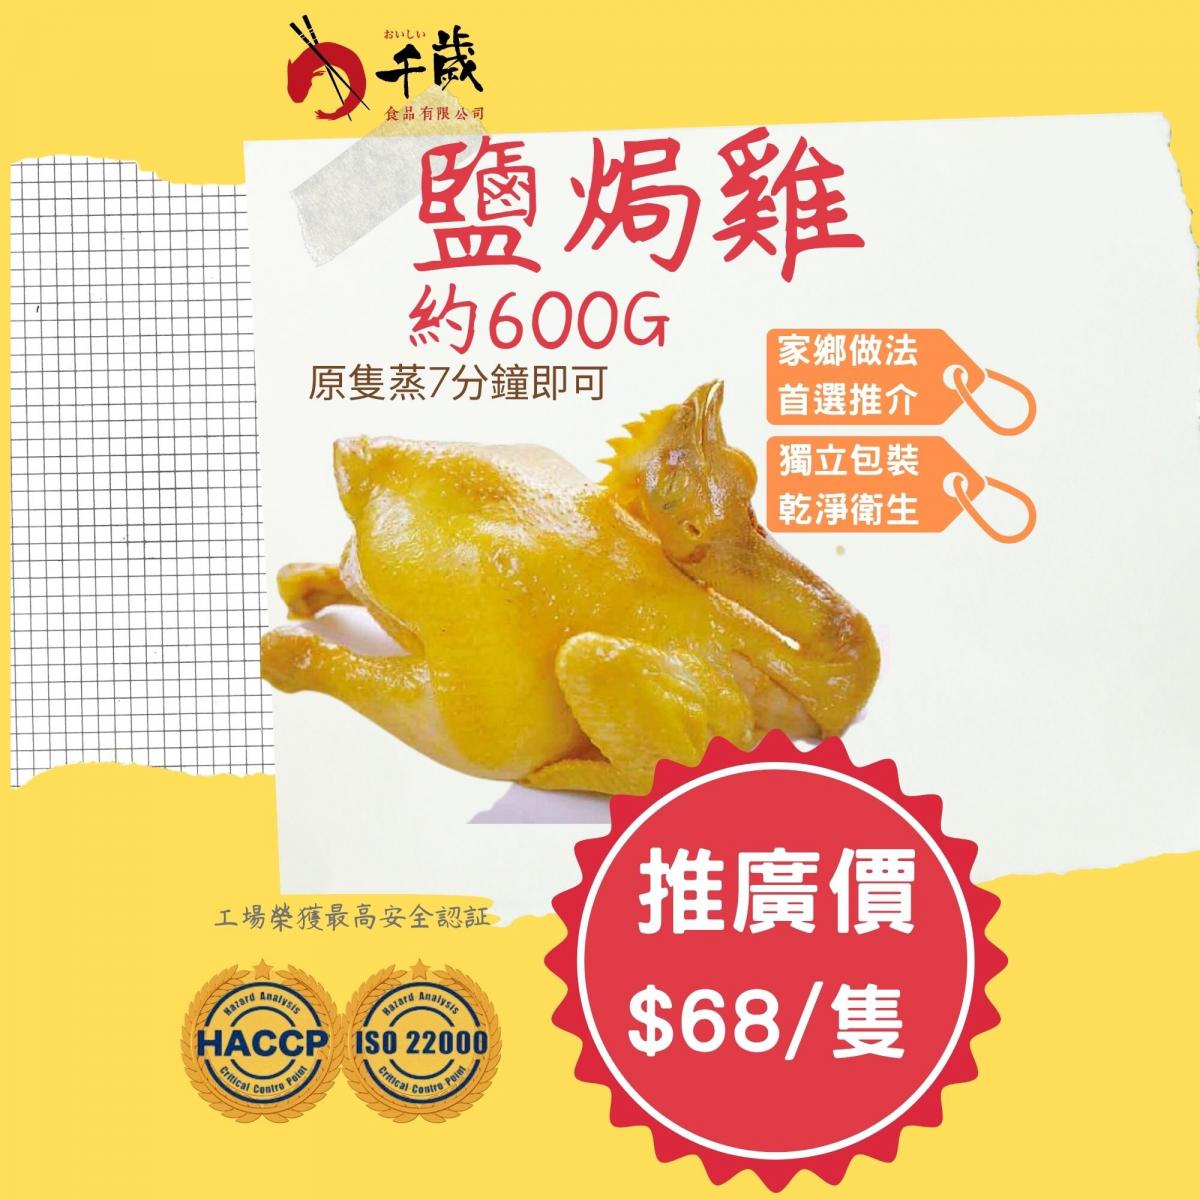 千歲食品| 鹽焗雞| HKTVmall 香港最大網購平台